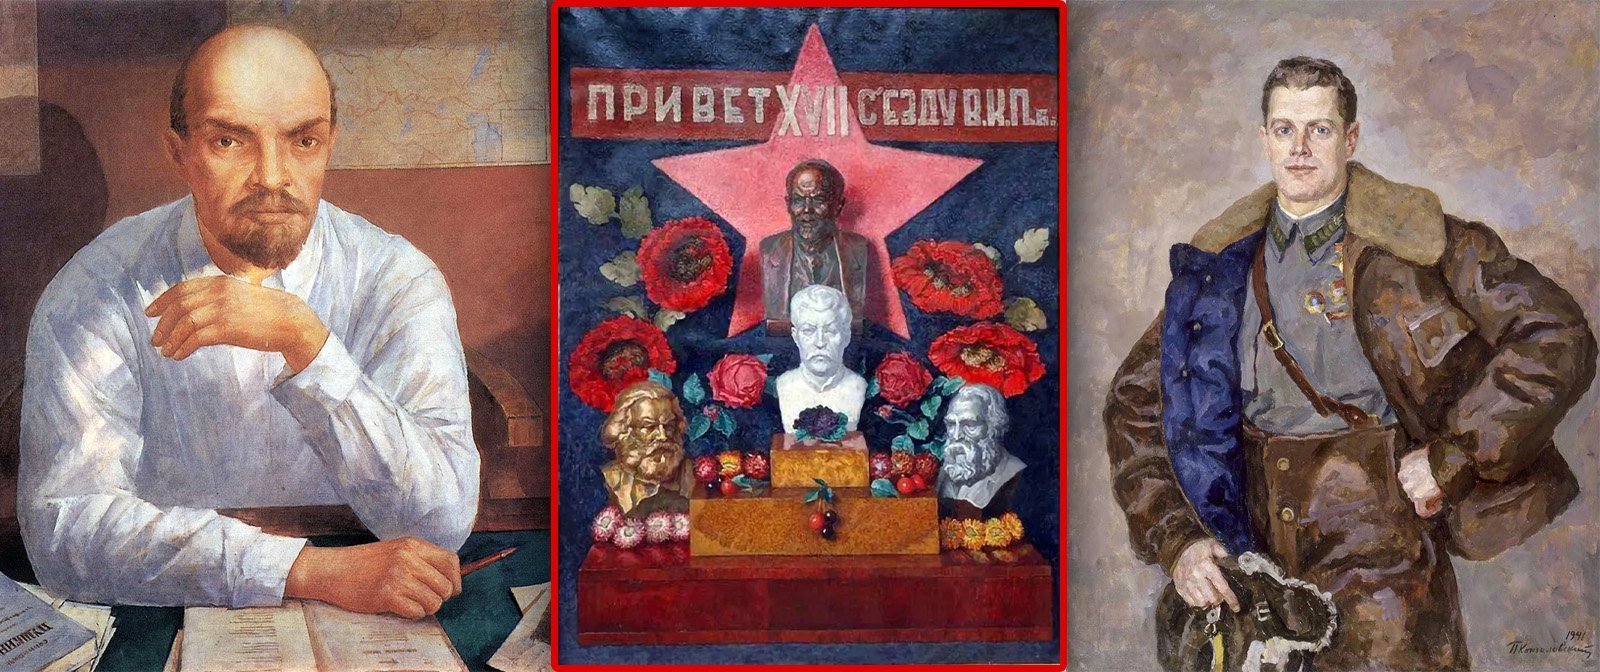 Писали доносы или иронизировали над советской действительностью в своих картинах. Как революция 1917 года изменила жизнь художников?